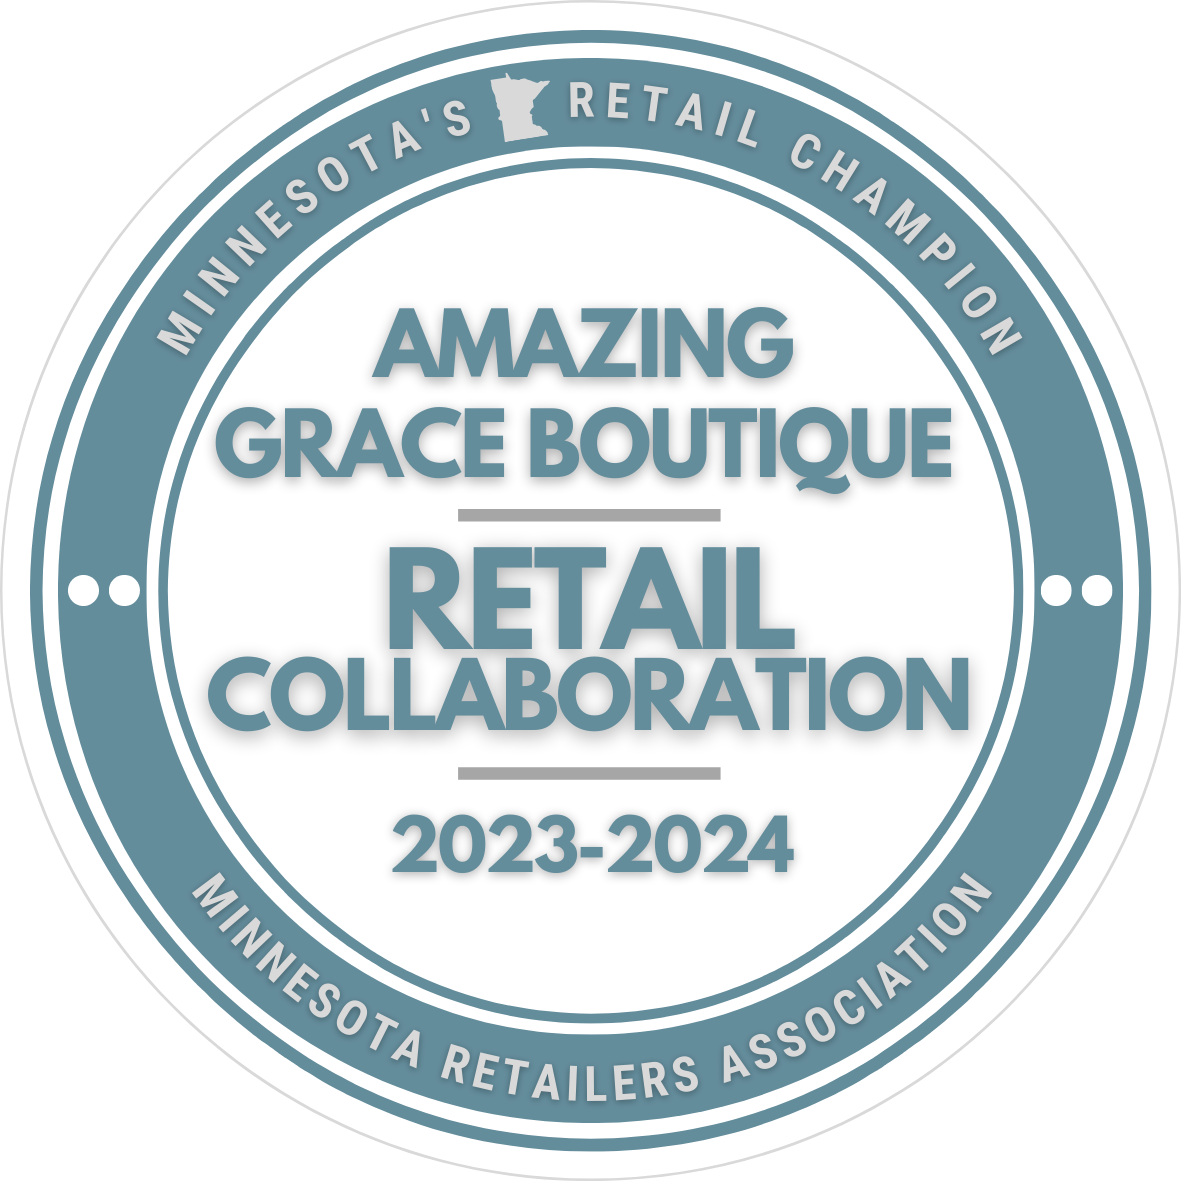 Amazing Grace Boutique Retail Collaboration